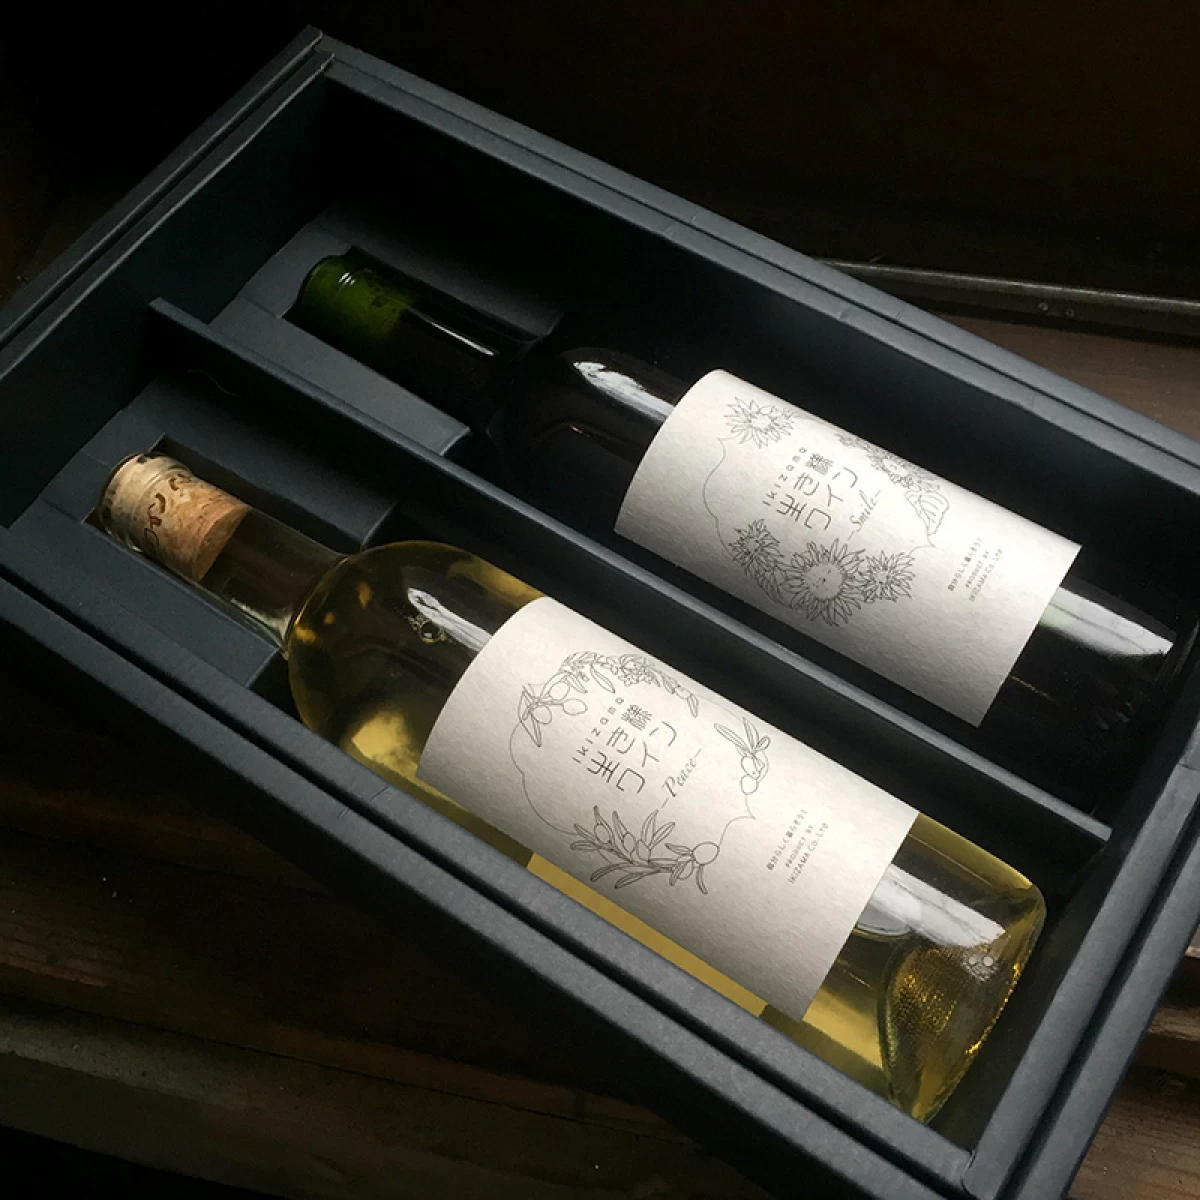 お祝い 当社のオリジナル生き様ワイン赤ワイン『Smile』と白ワイン『Peace』の2本セットボックス